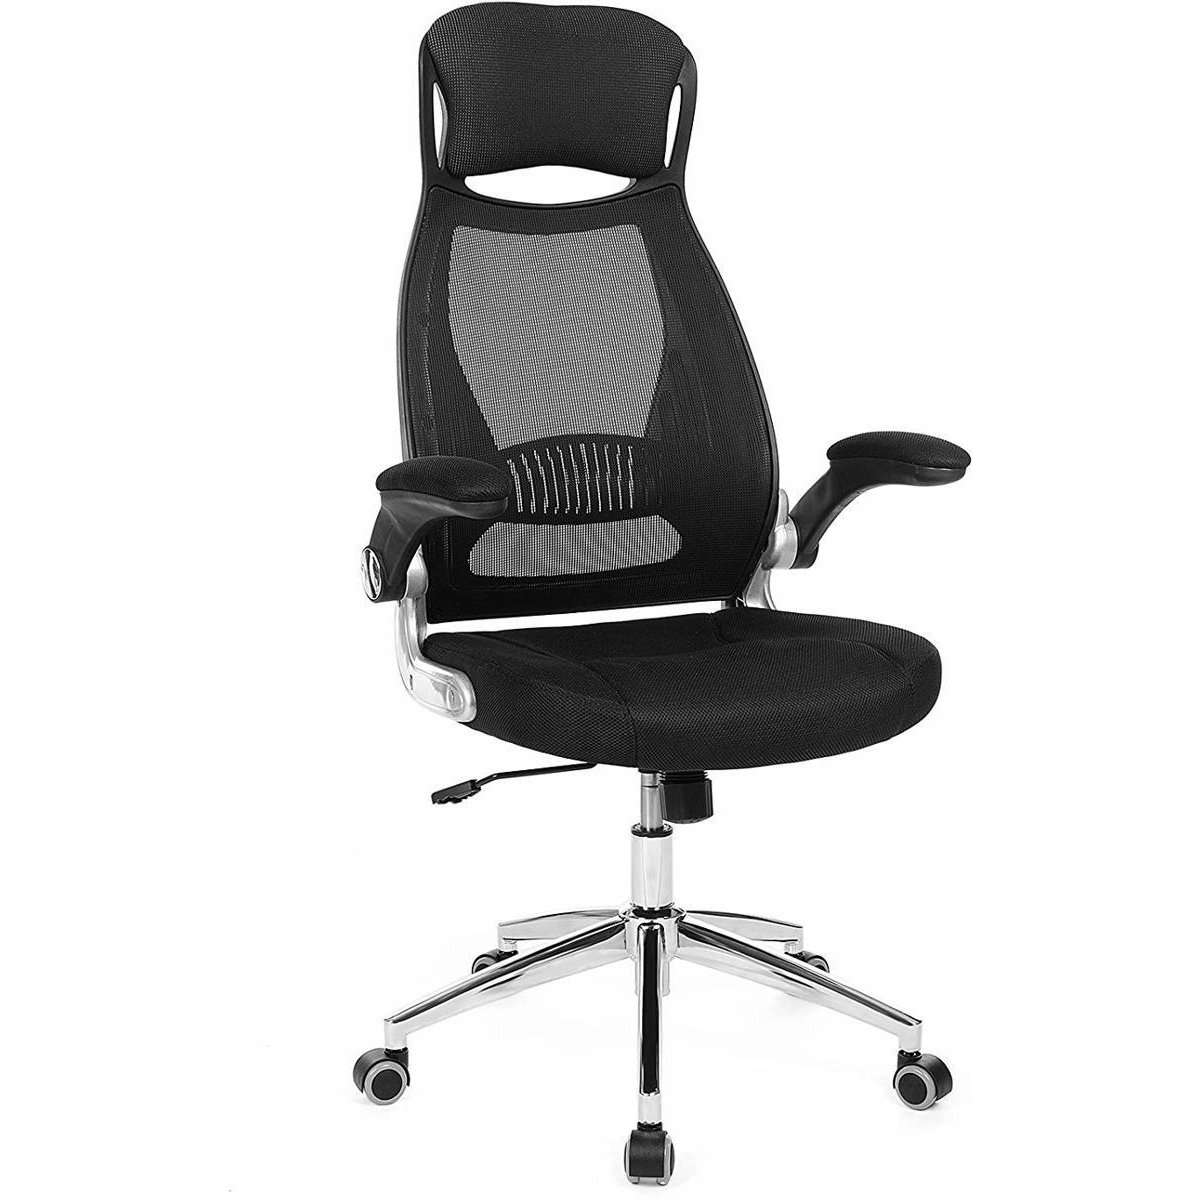 Chaise de bureau Nancy's Laconia noire - Chaises de bureau - Chaises de bureau pour adultes